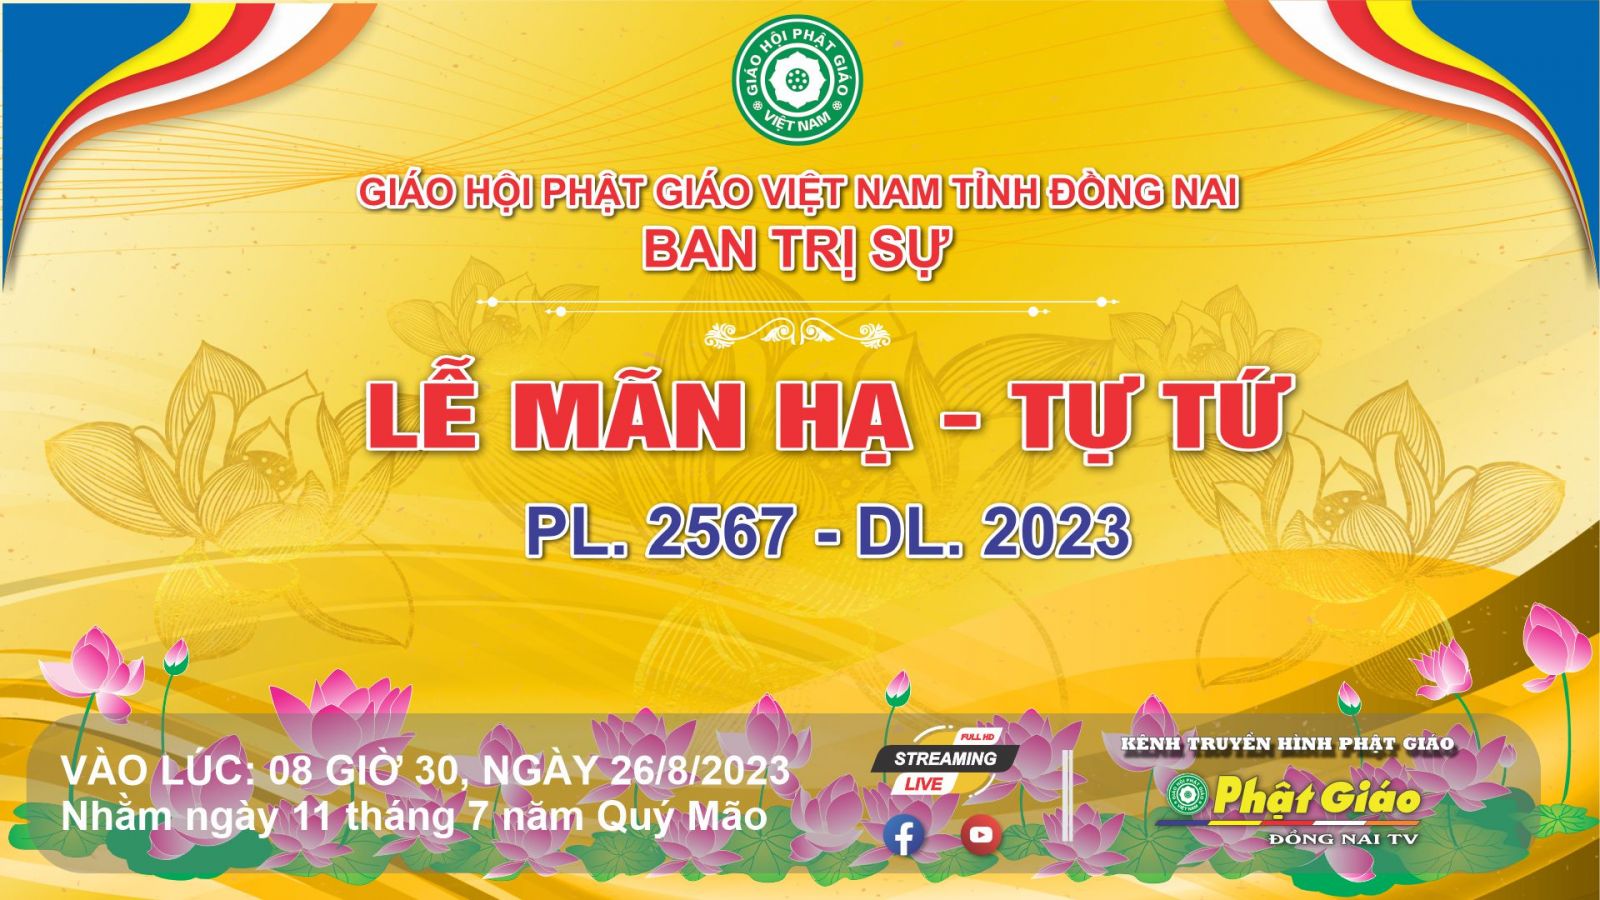 Trực tiếp: Ban Trị sự GHPGVN tỉnh Đồng Nai trang nghiêm tổ chức Lễ Mãn Hạ - Tự Tứ PL 2567 - DL 2023